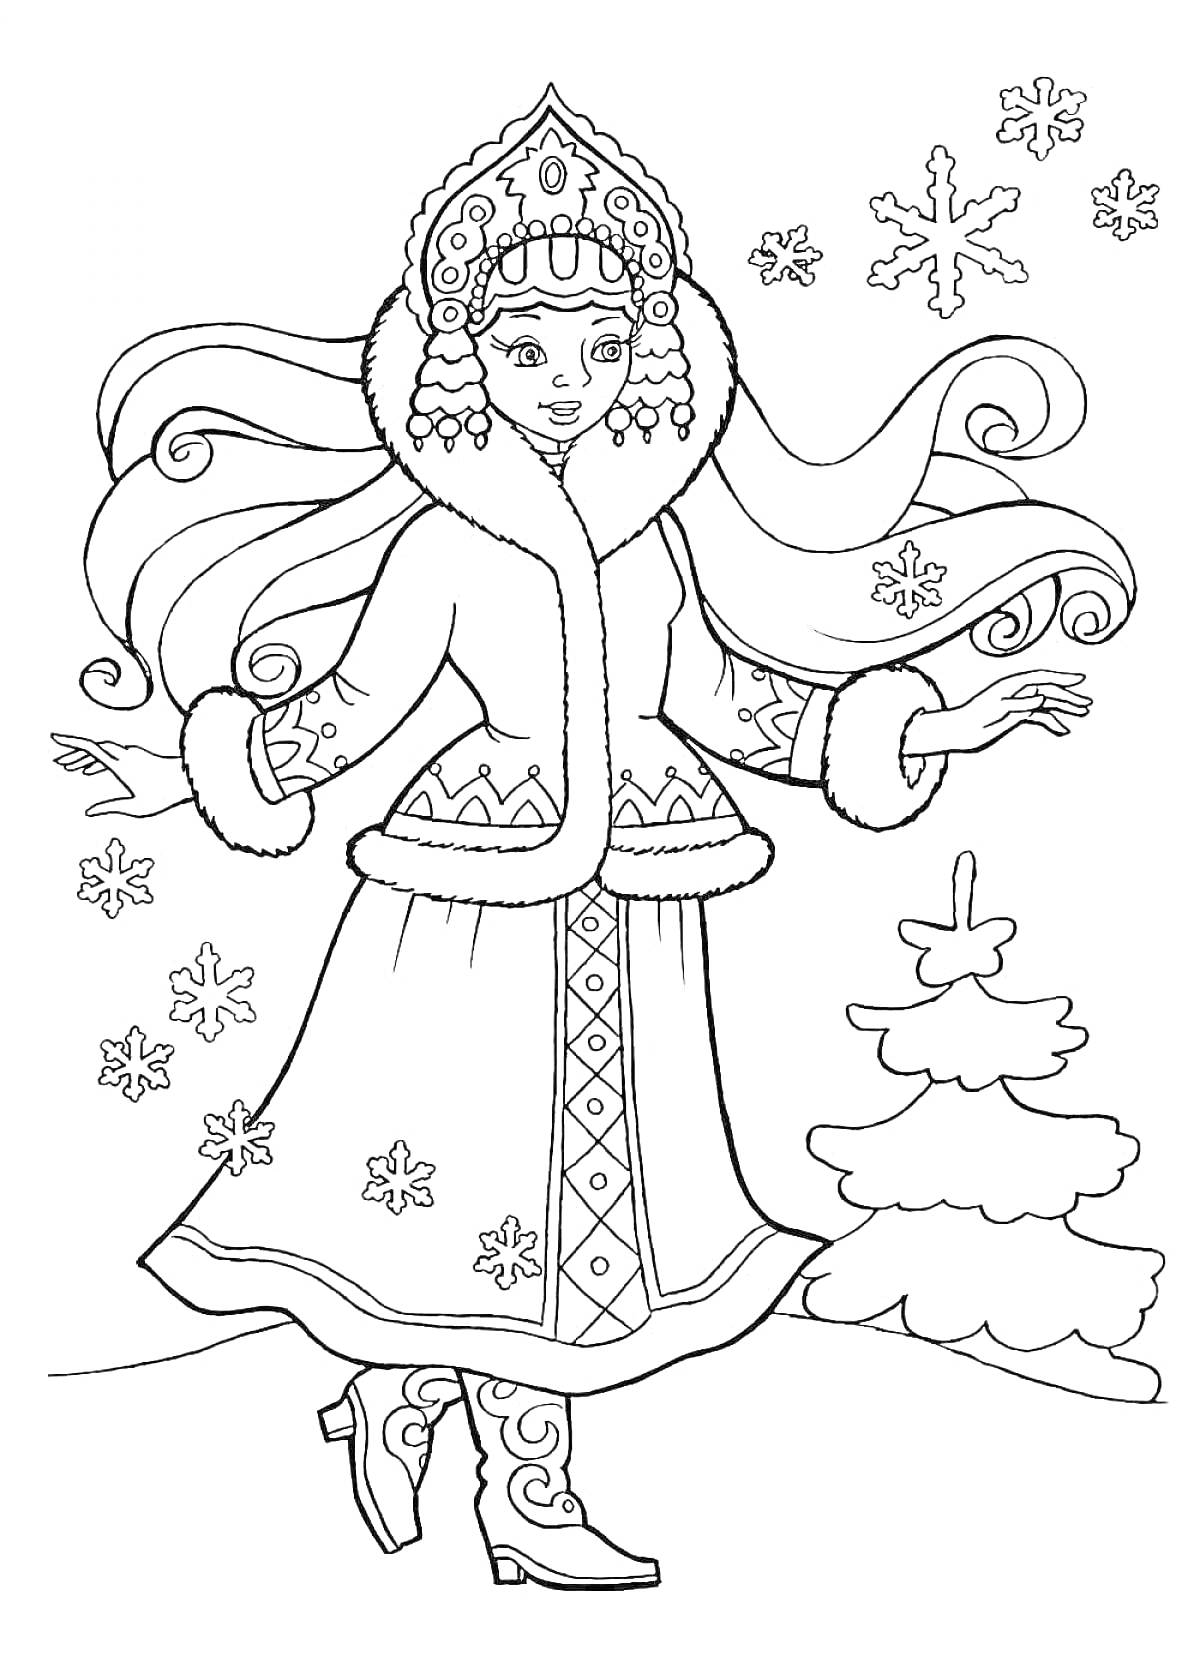 Раскраска Снегурочка в зимнем наряде рядом с ёлкой и снежинками